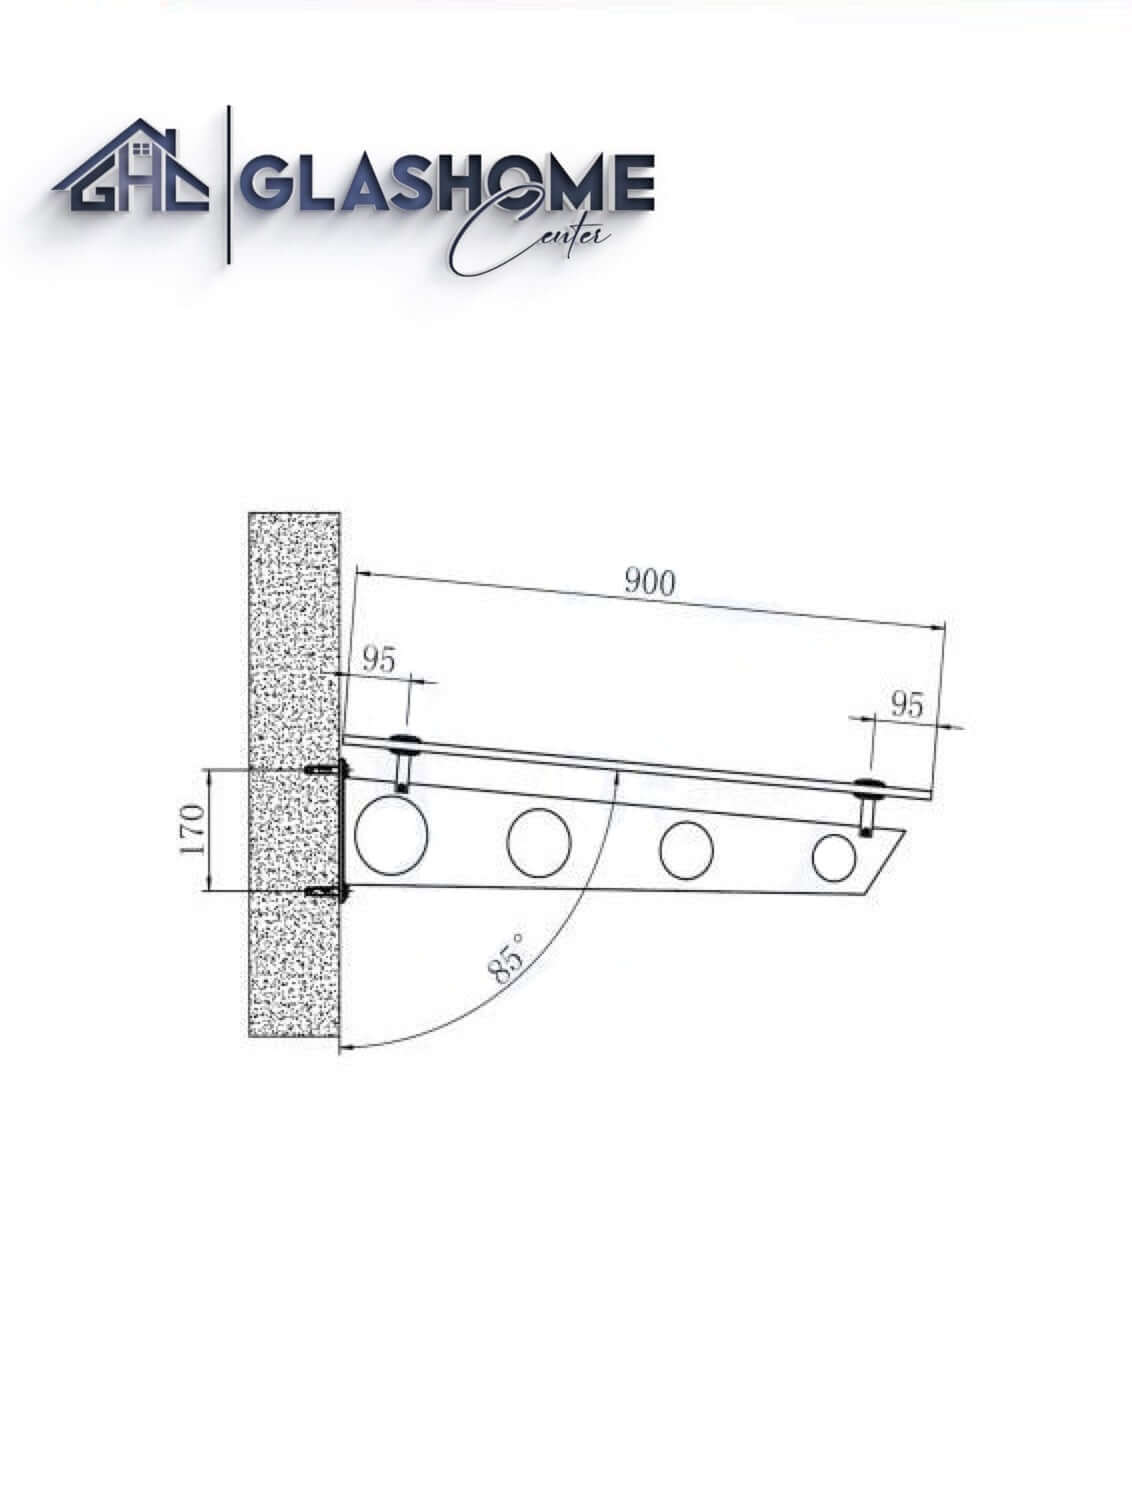 GlasHomeCenter - Glasvordach - Milchglas - 120x90cm - 13.1mm VSG - inkl. 2 schwarze Edelstahlhalterungen Variante "Stockholm"